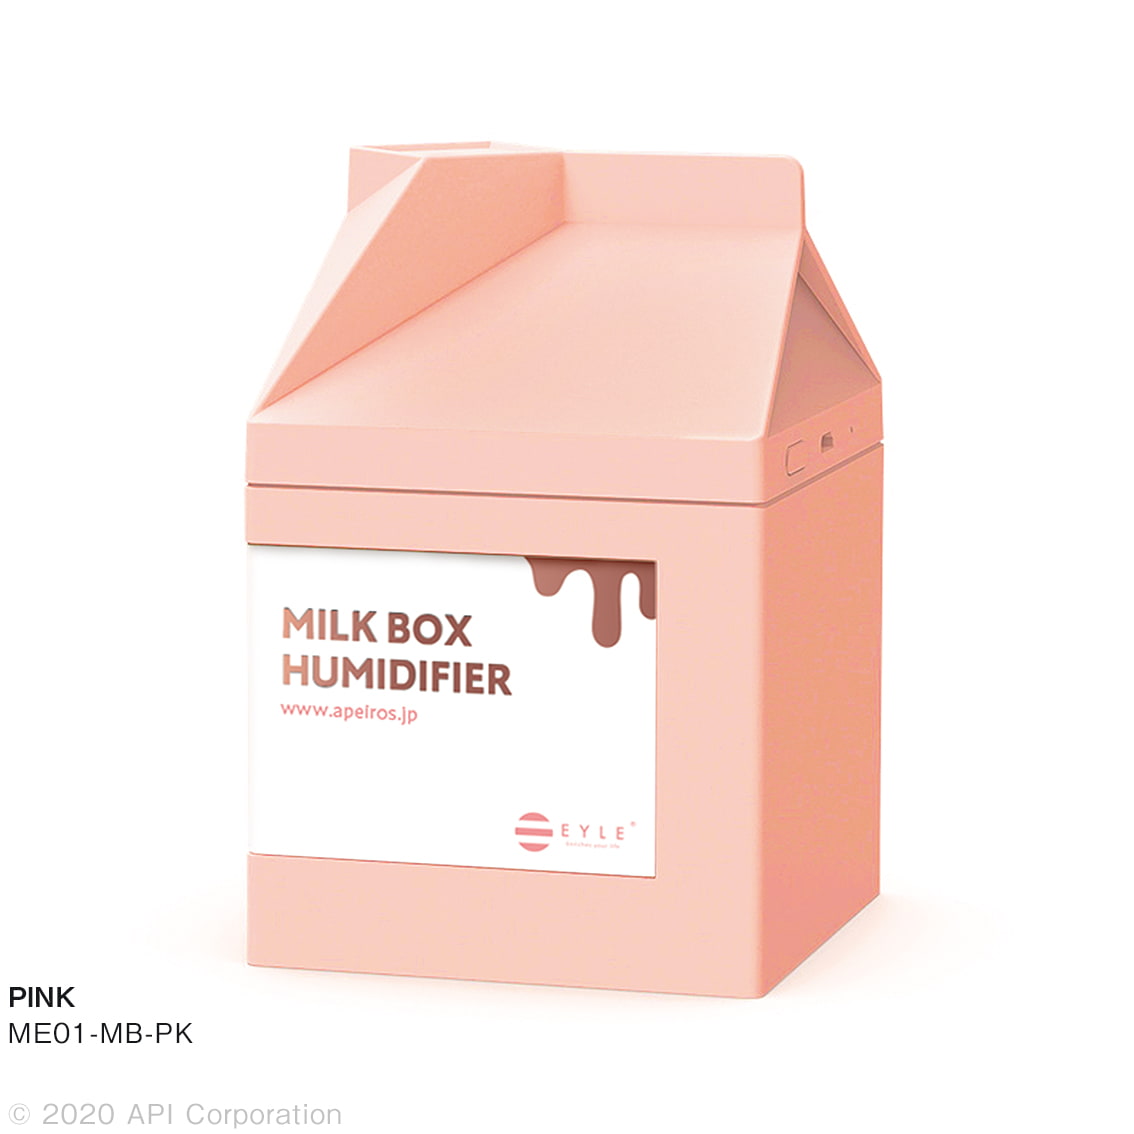 卓上加湿器  MILK BOX ミルクボックス型 超音波式加湿器